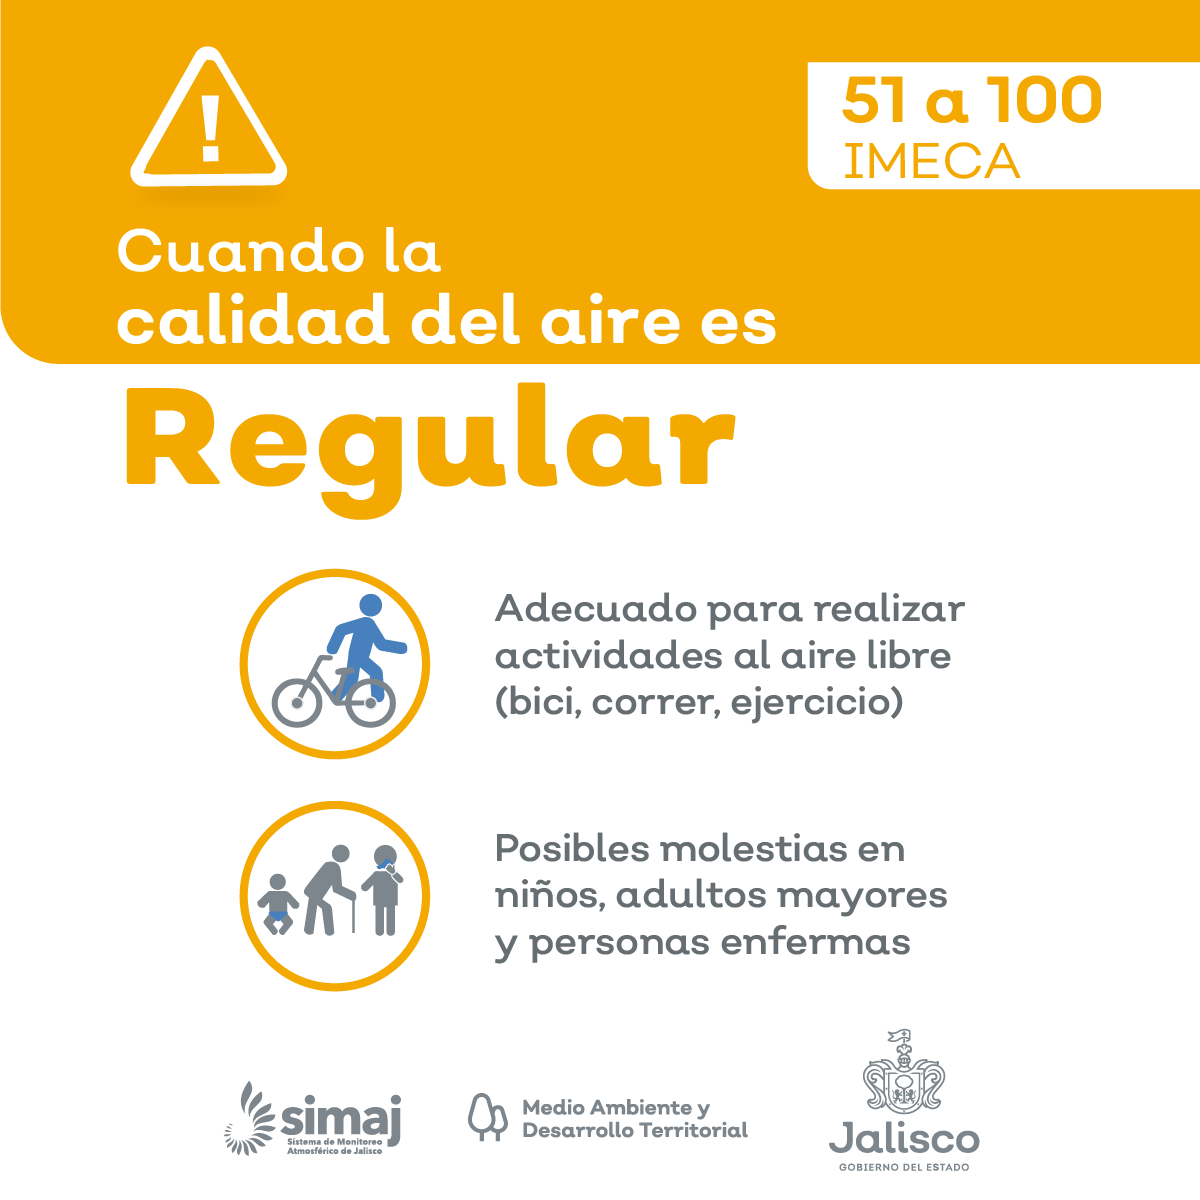 mié. 03:00 a.m. En #AMG la #CalidadDelAire Promedio es : REGULAR, nivel máximo registrado 102 puntos IMECA en Las Pintas Consulta Índice de calidad del aire en AMG : aire.jalisco.gob.mx